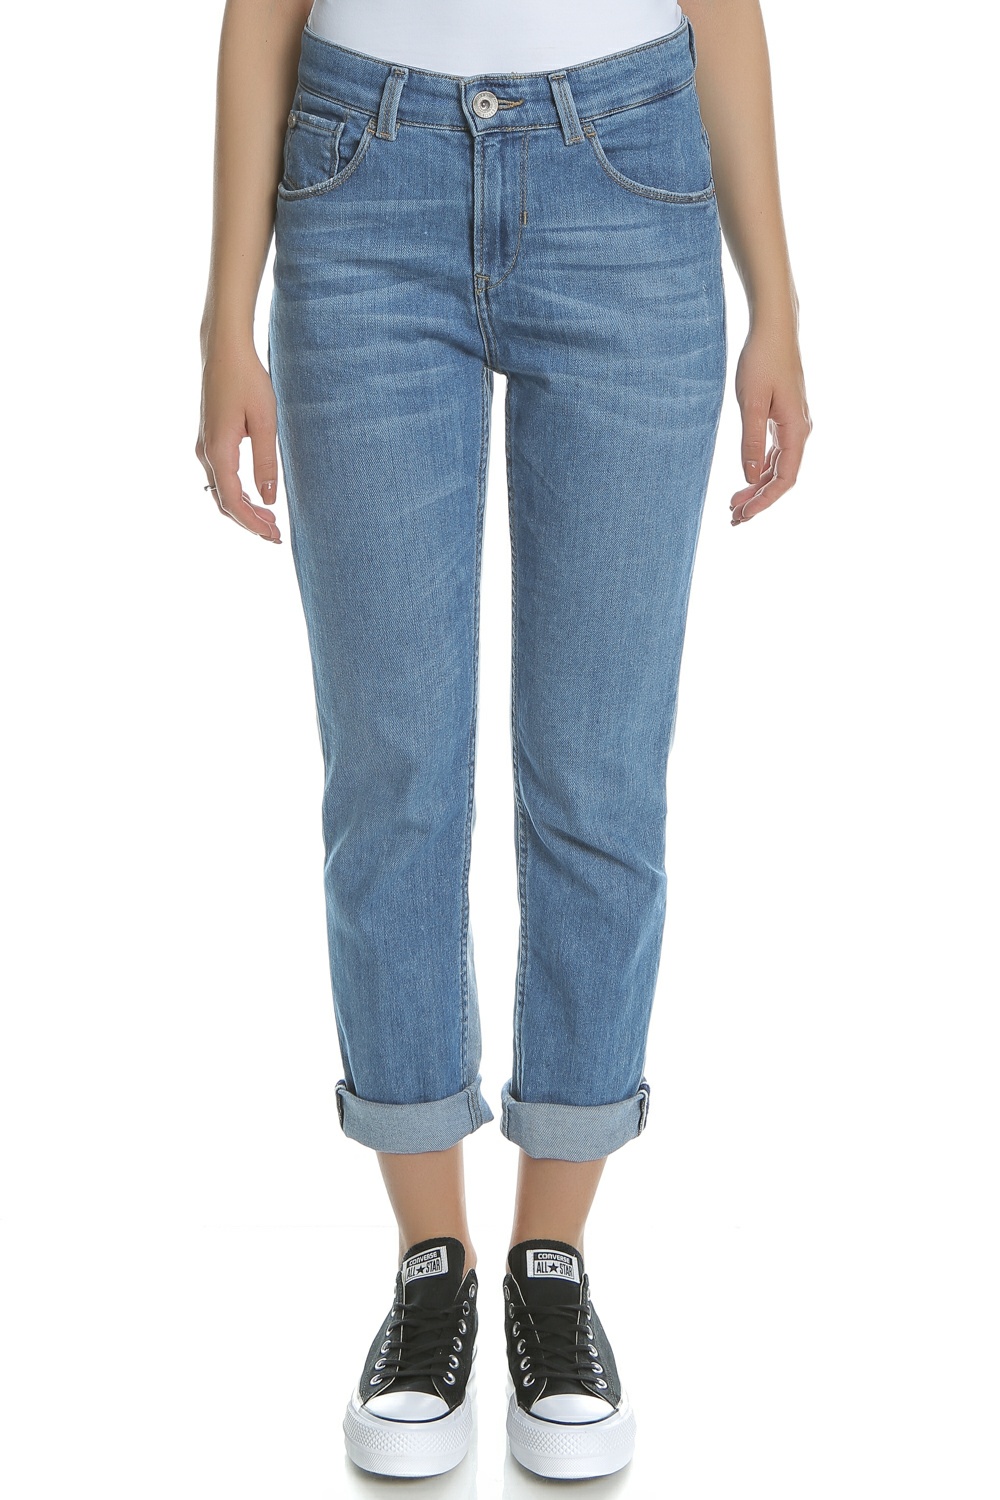 Γυναικεία/Ρούχα/Τζίν/Straight GARCIA JEANS - Γυναικείο τζιν παντελόνι Garcia Jeans δίχρωμο